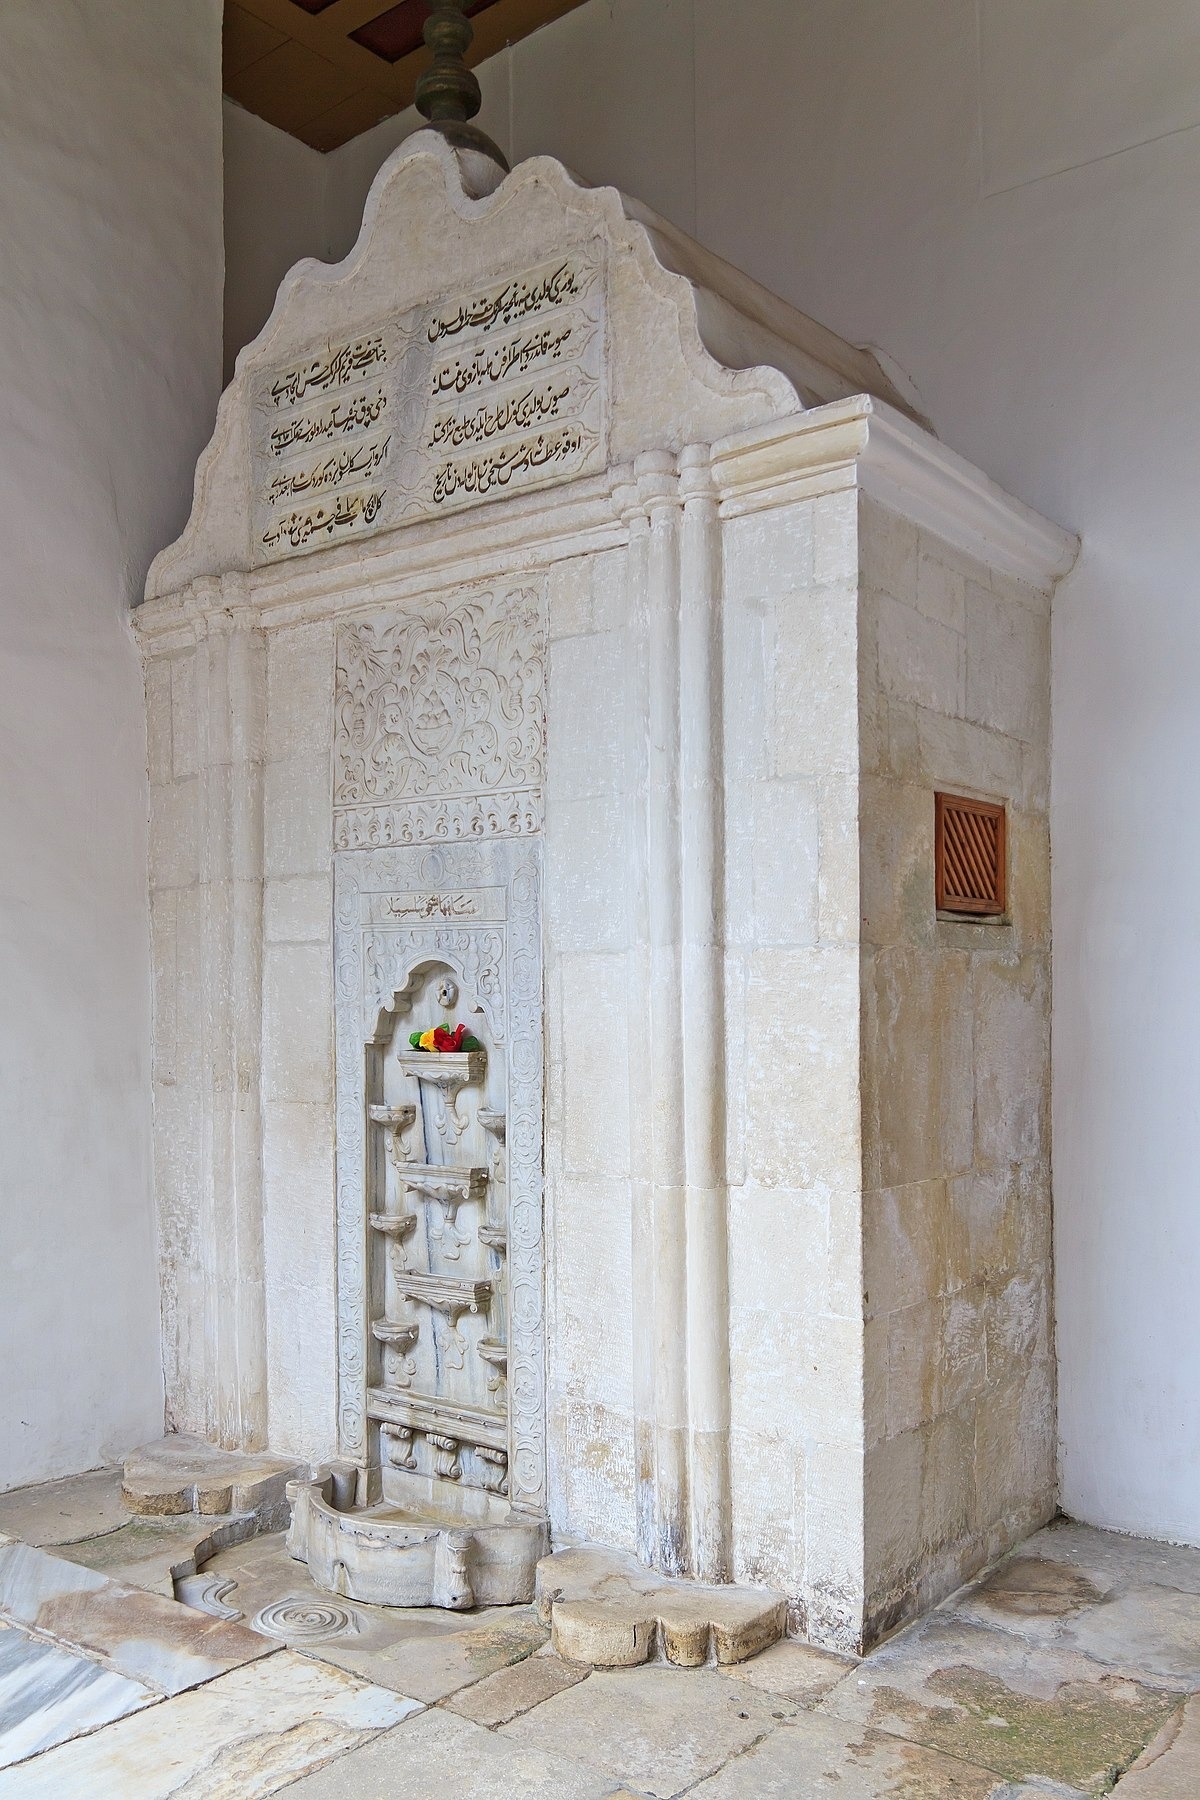 “Фонтан сліз” (Közyaş Çeşmesi) — фонтан сабіль, найвідоміша пам'ятка в Бахчисарайському палаці. Збудований іранським майстром Омером у 1764 р.